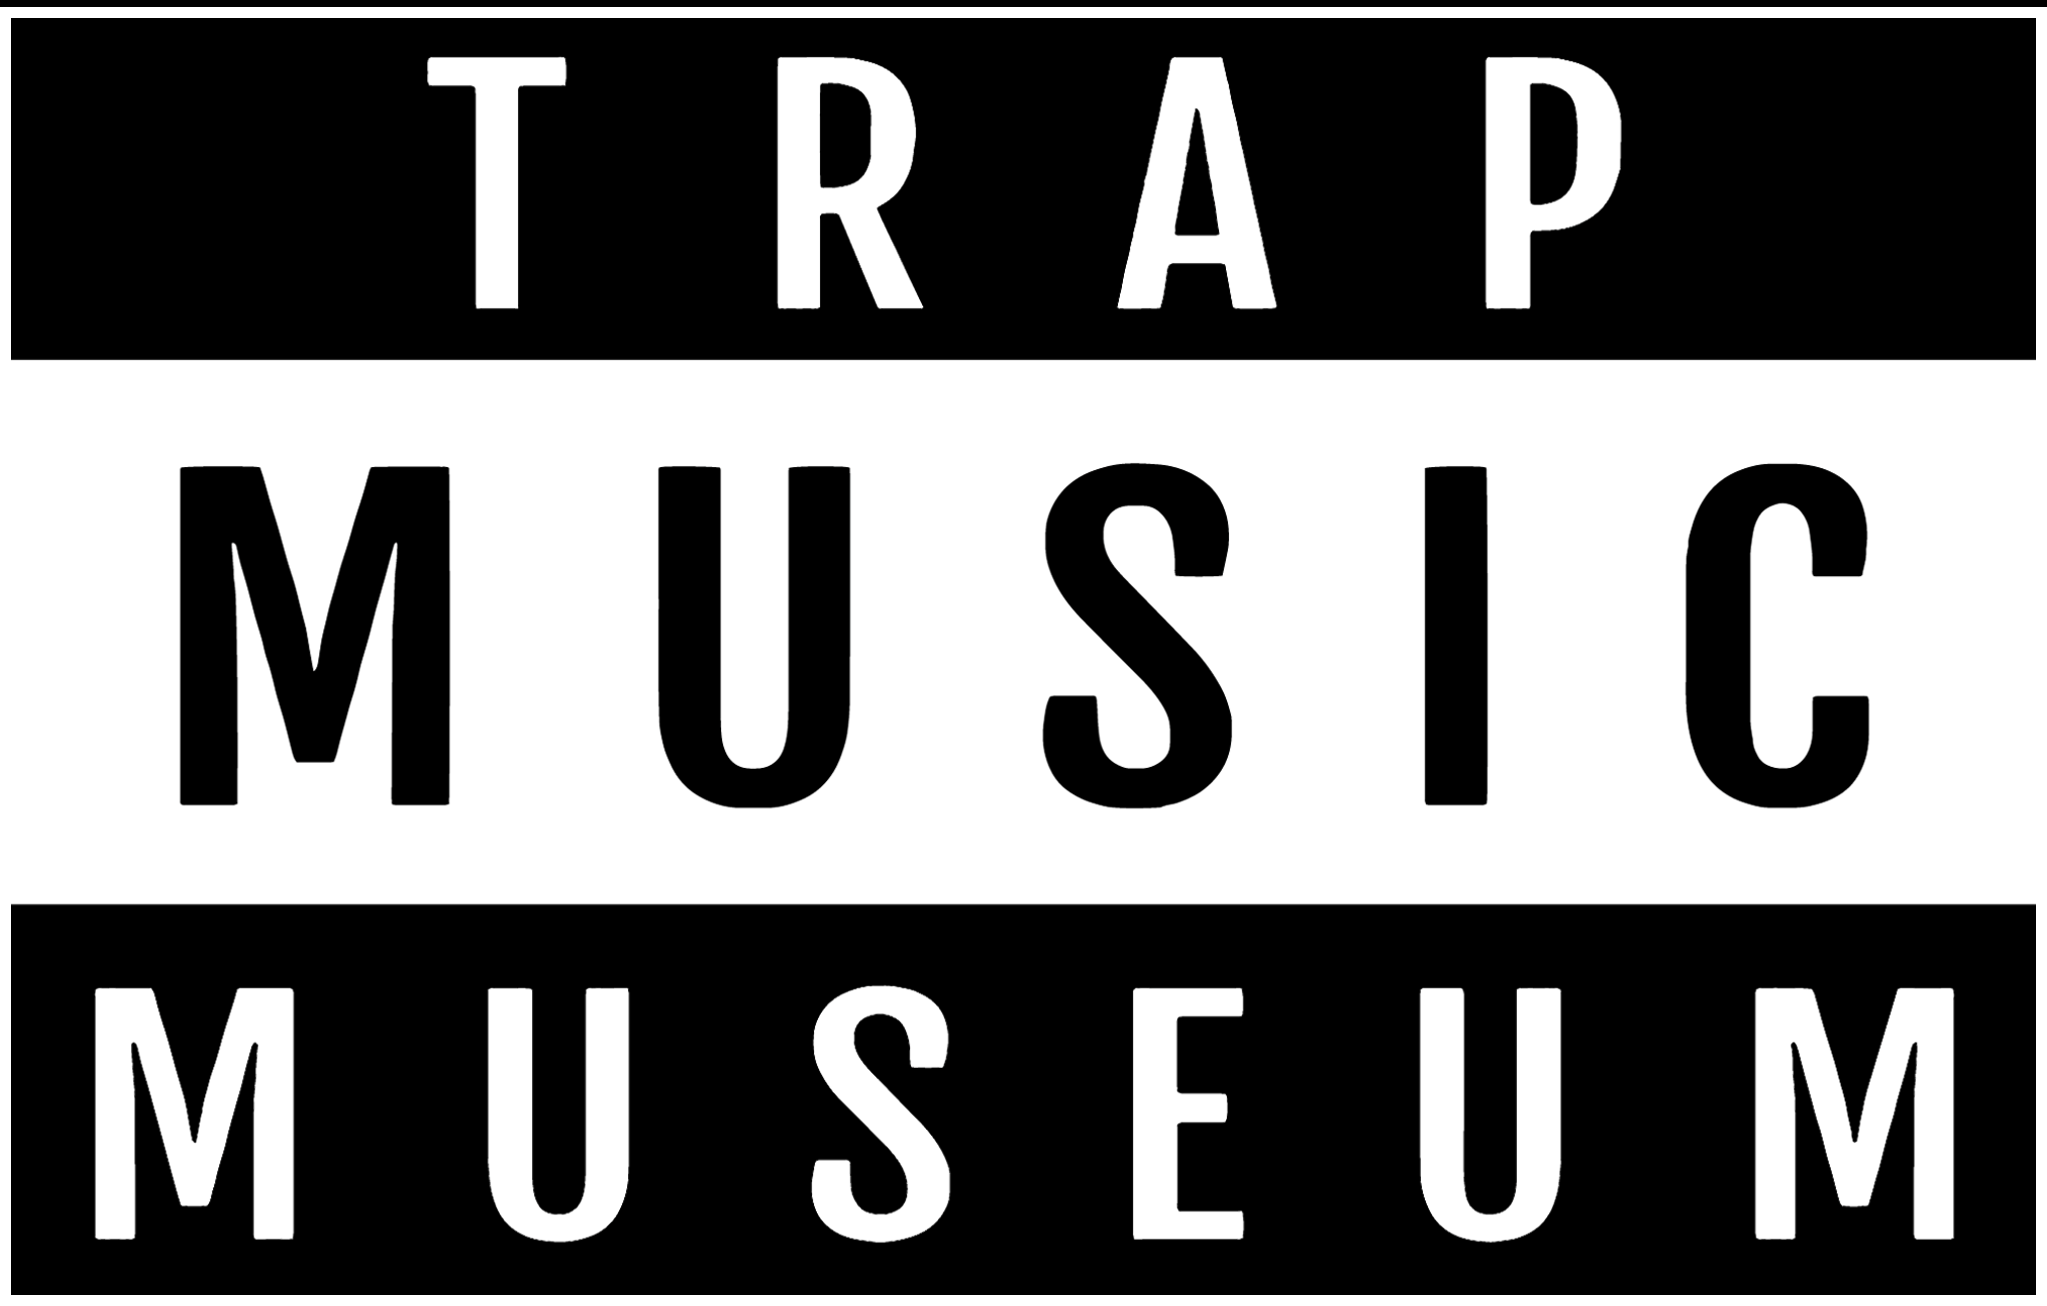 trapmusicmuseum